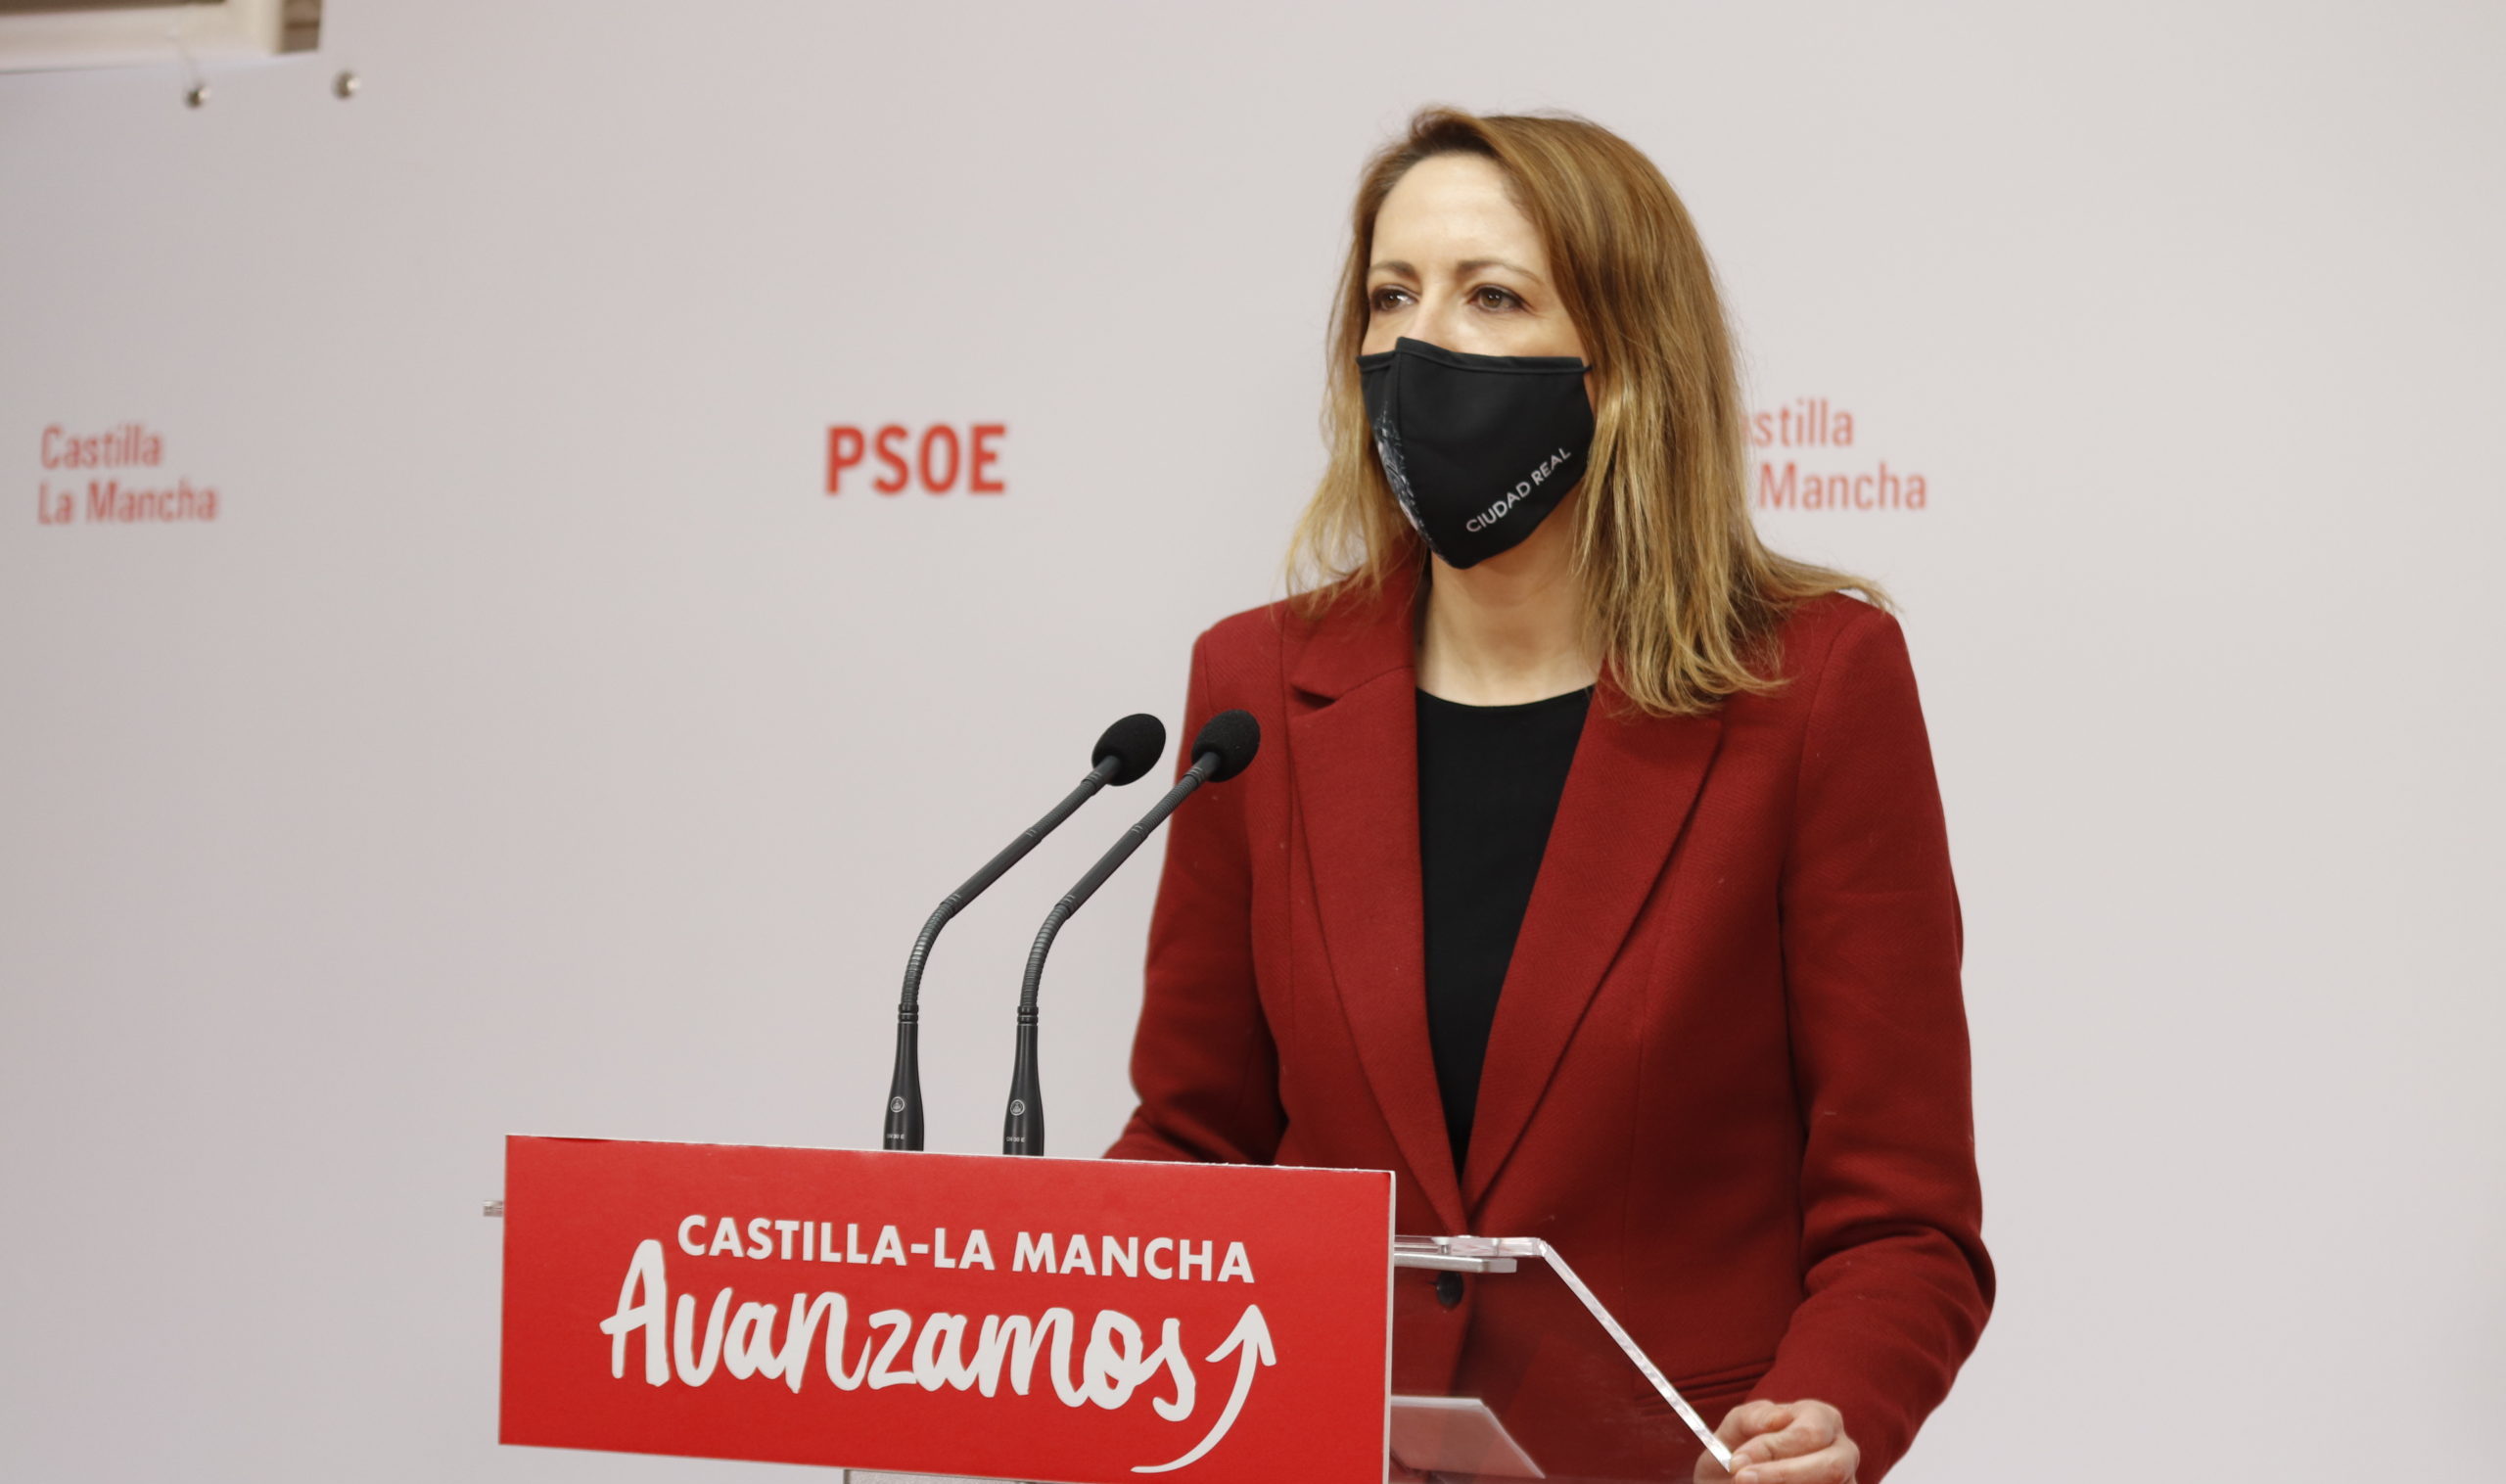 Maestre cuestiona las propuestas del PP de Núñez por su “política de obstrucción permanente” al negarse a apoyar los fondos europeos